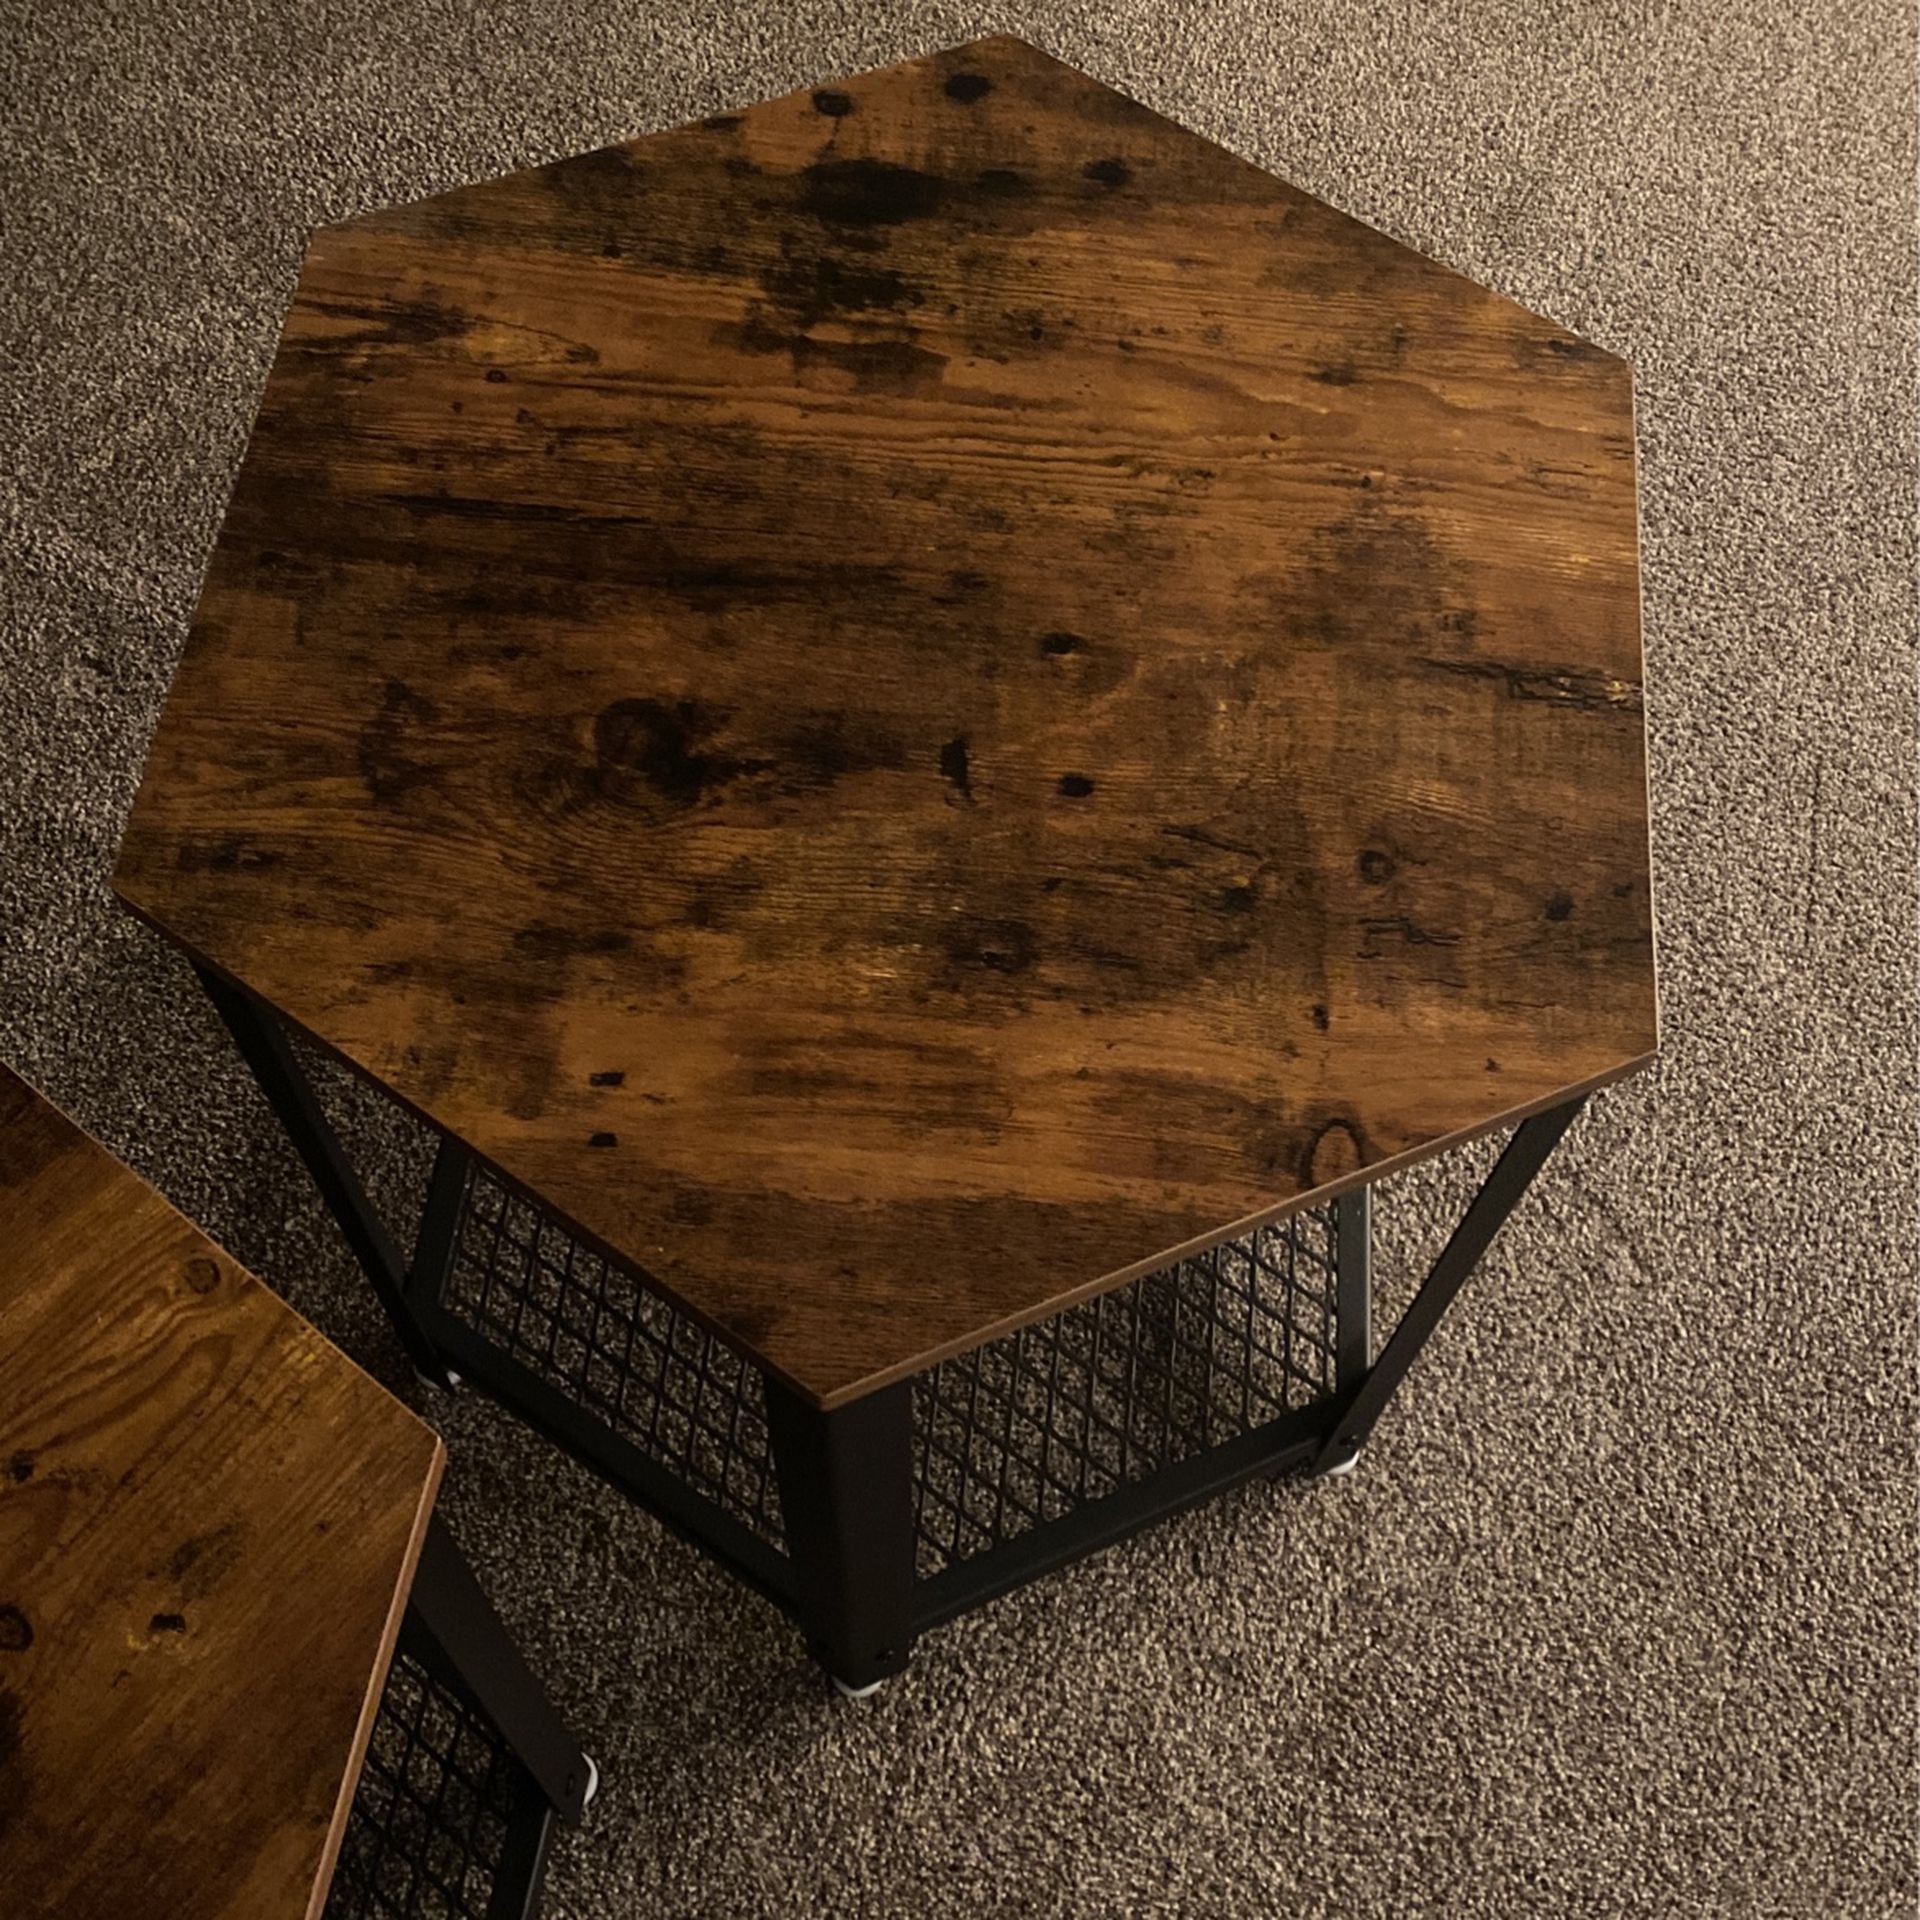 2 Metal/wood Hexagon Side Tables (Pair)